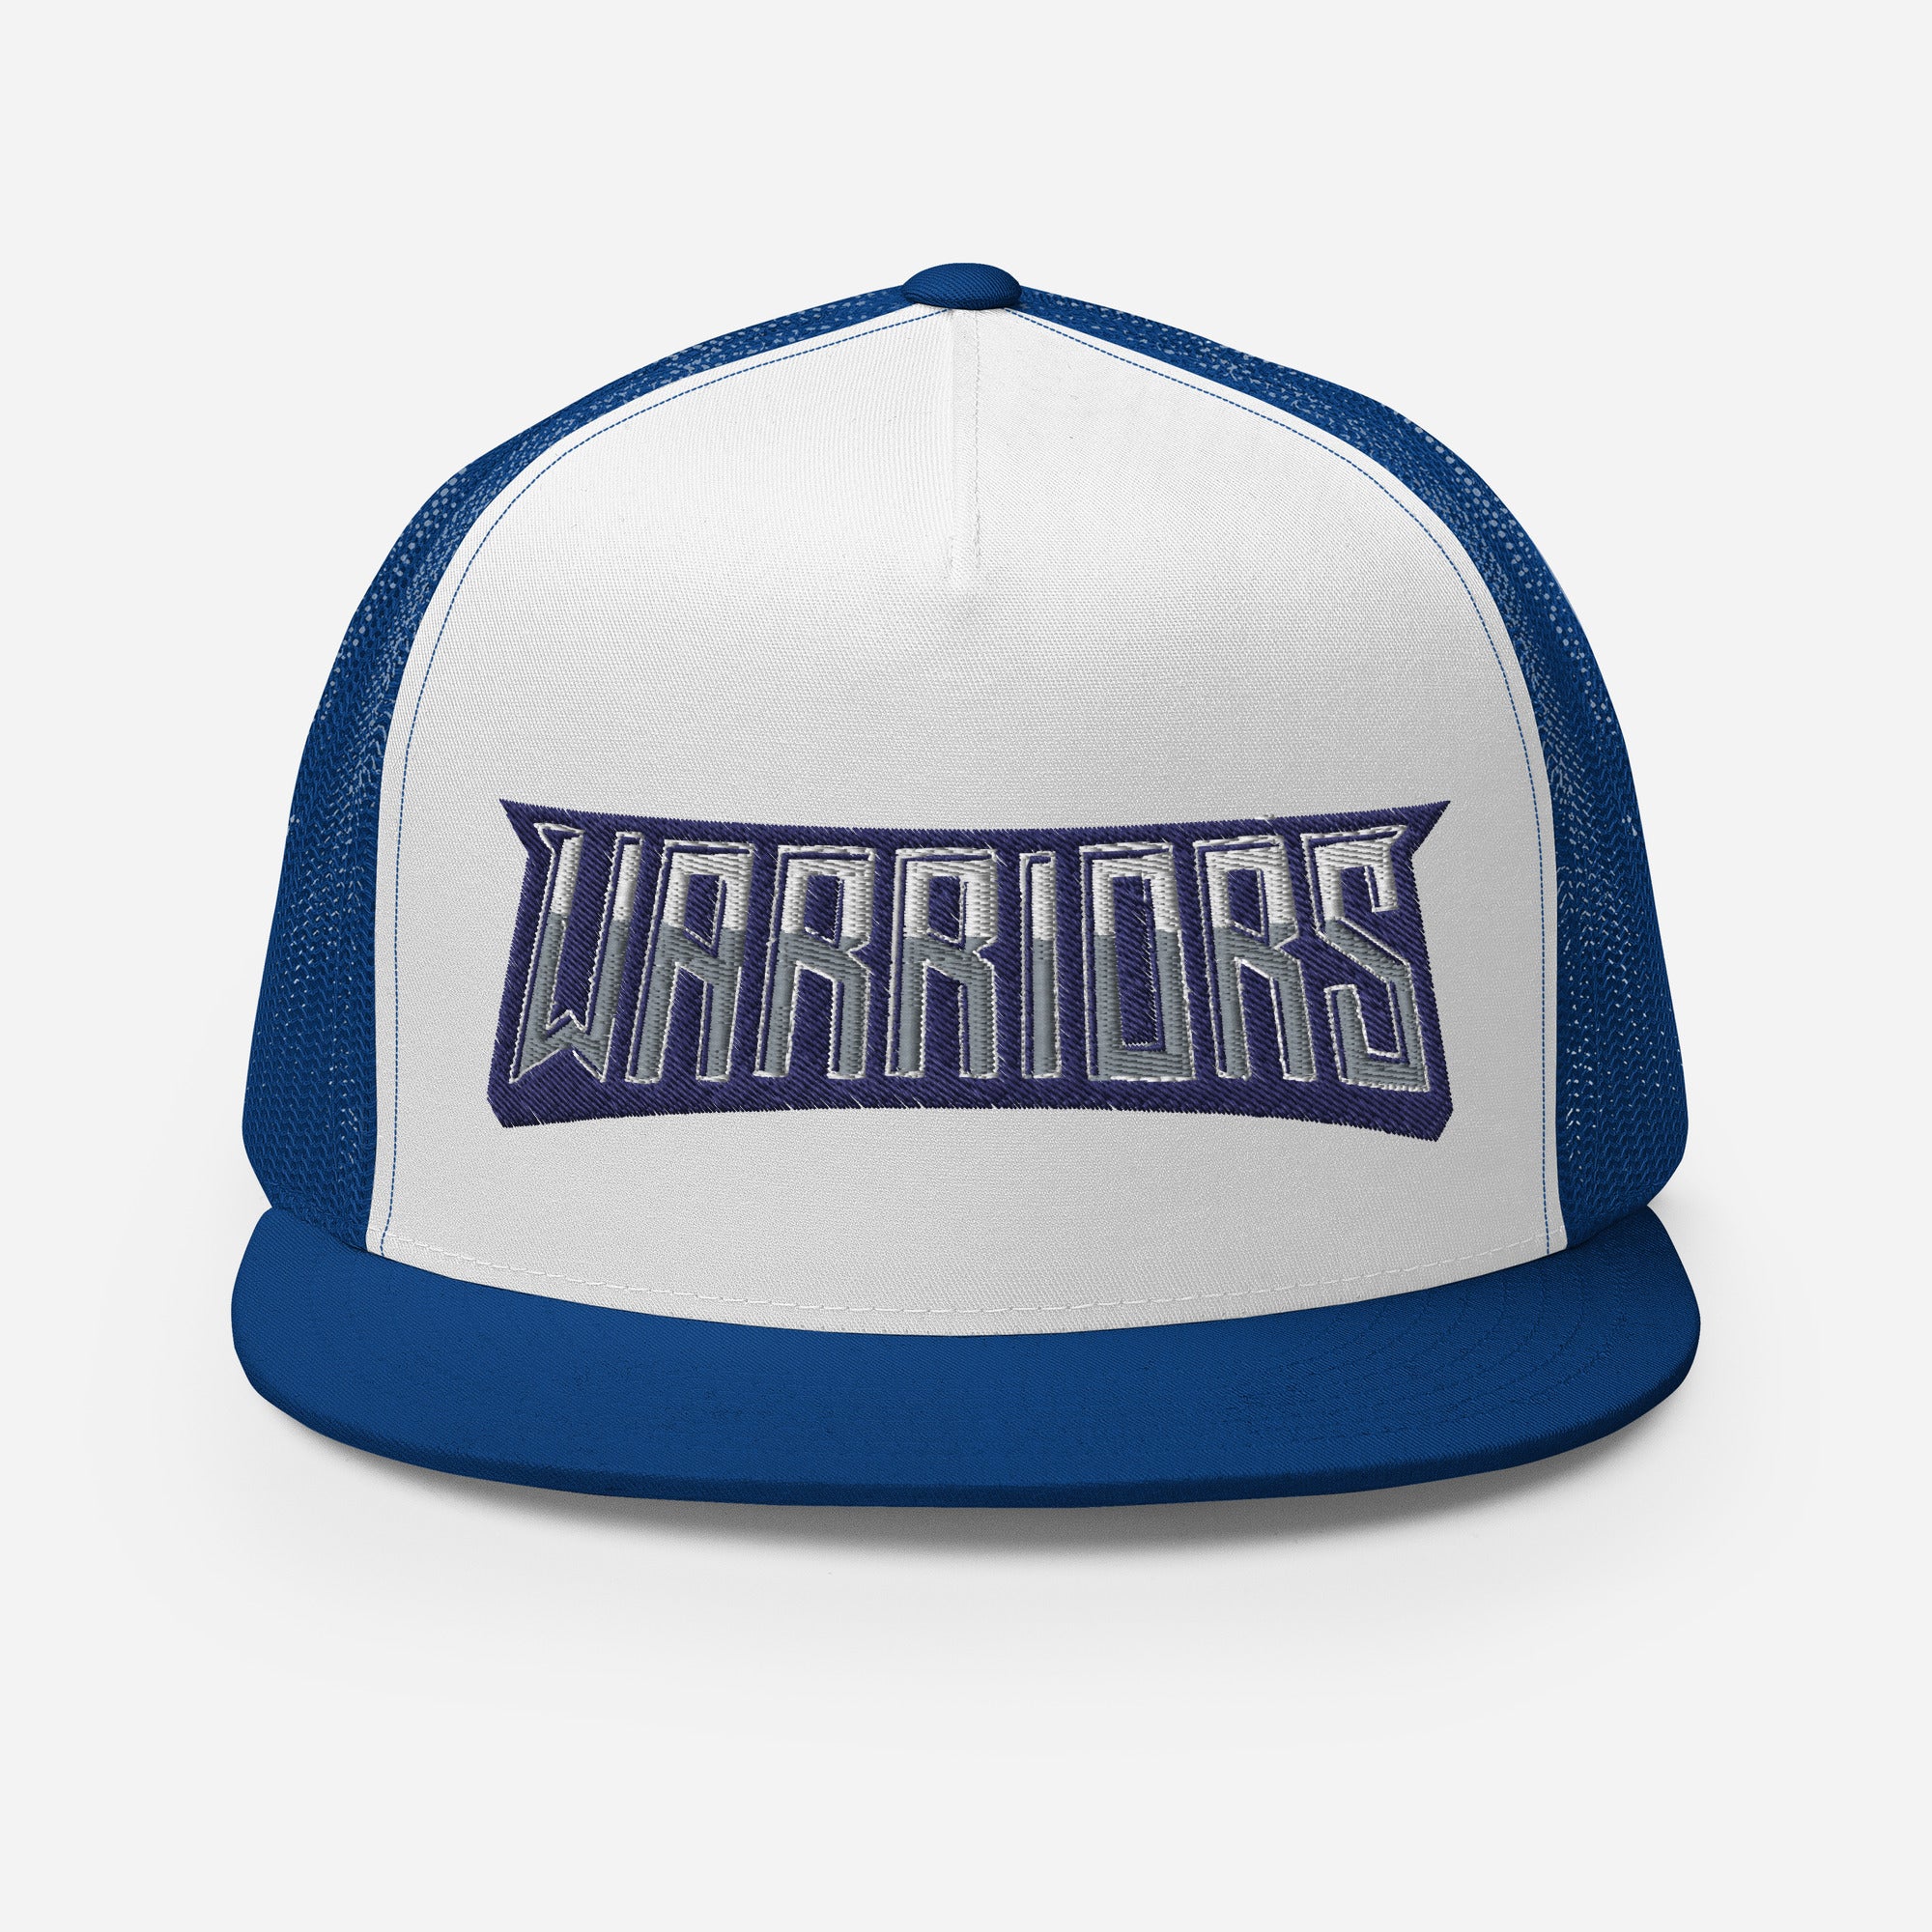 Tampa Warriors Word Seal Trucker Cap